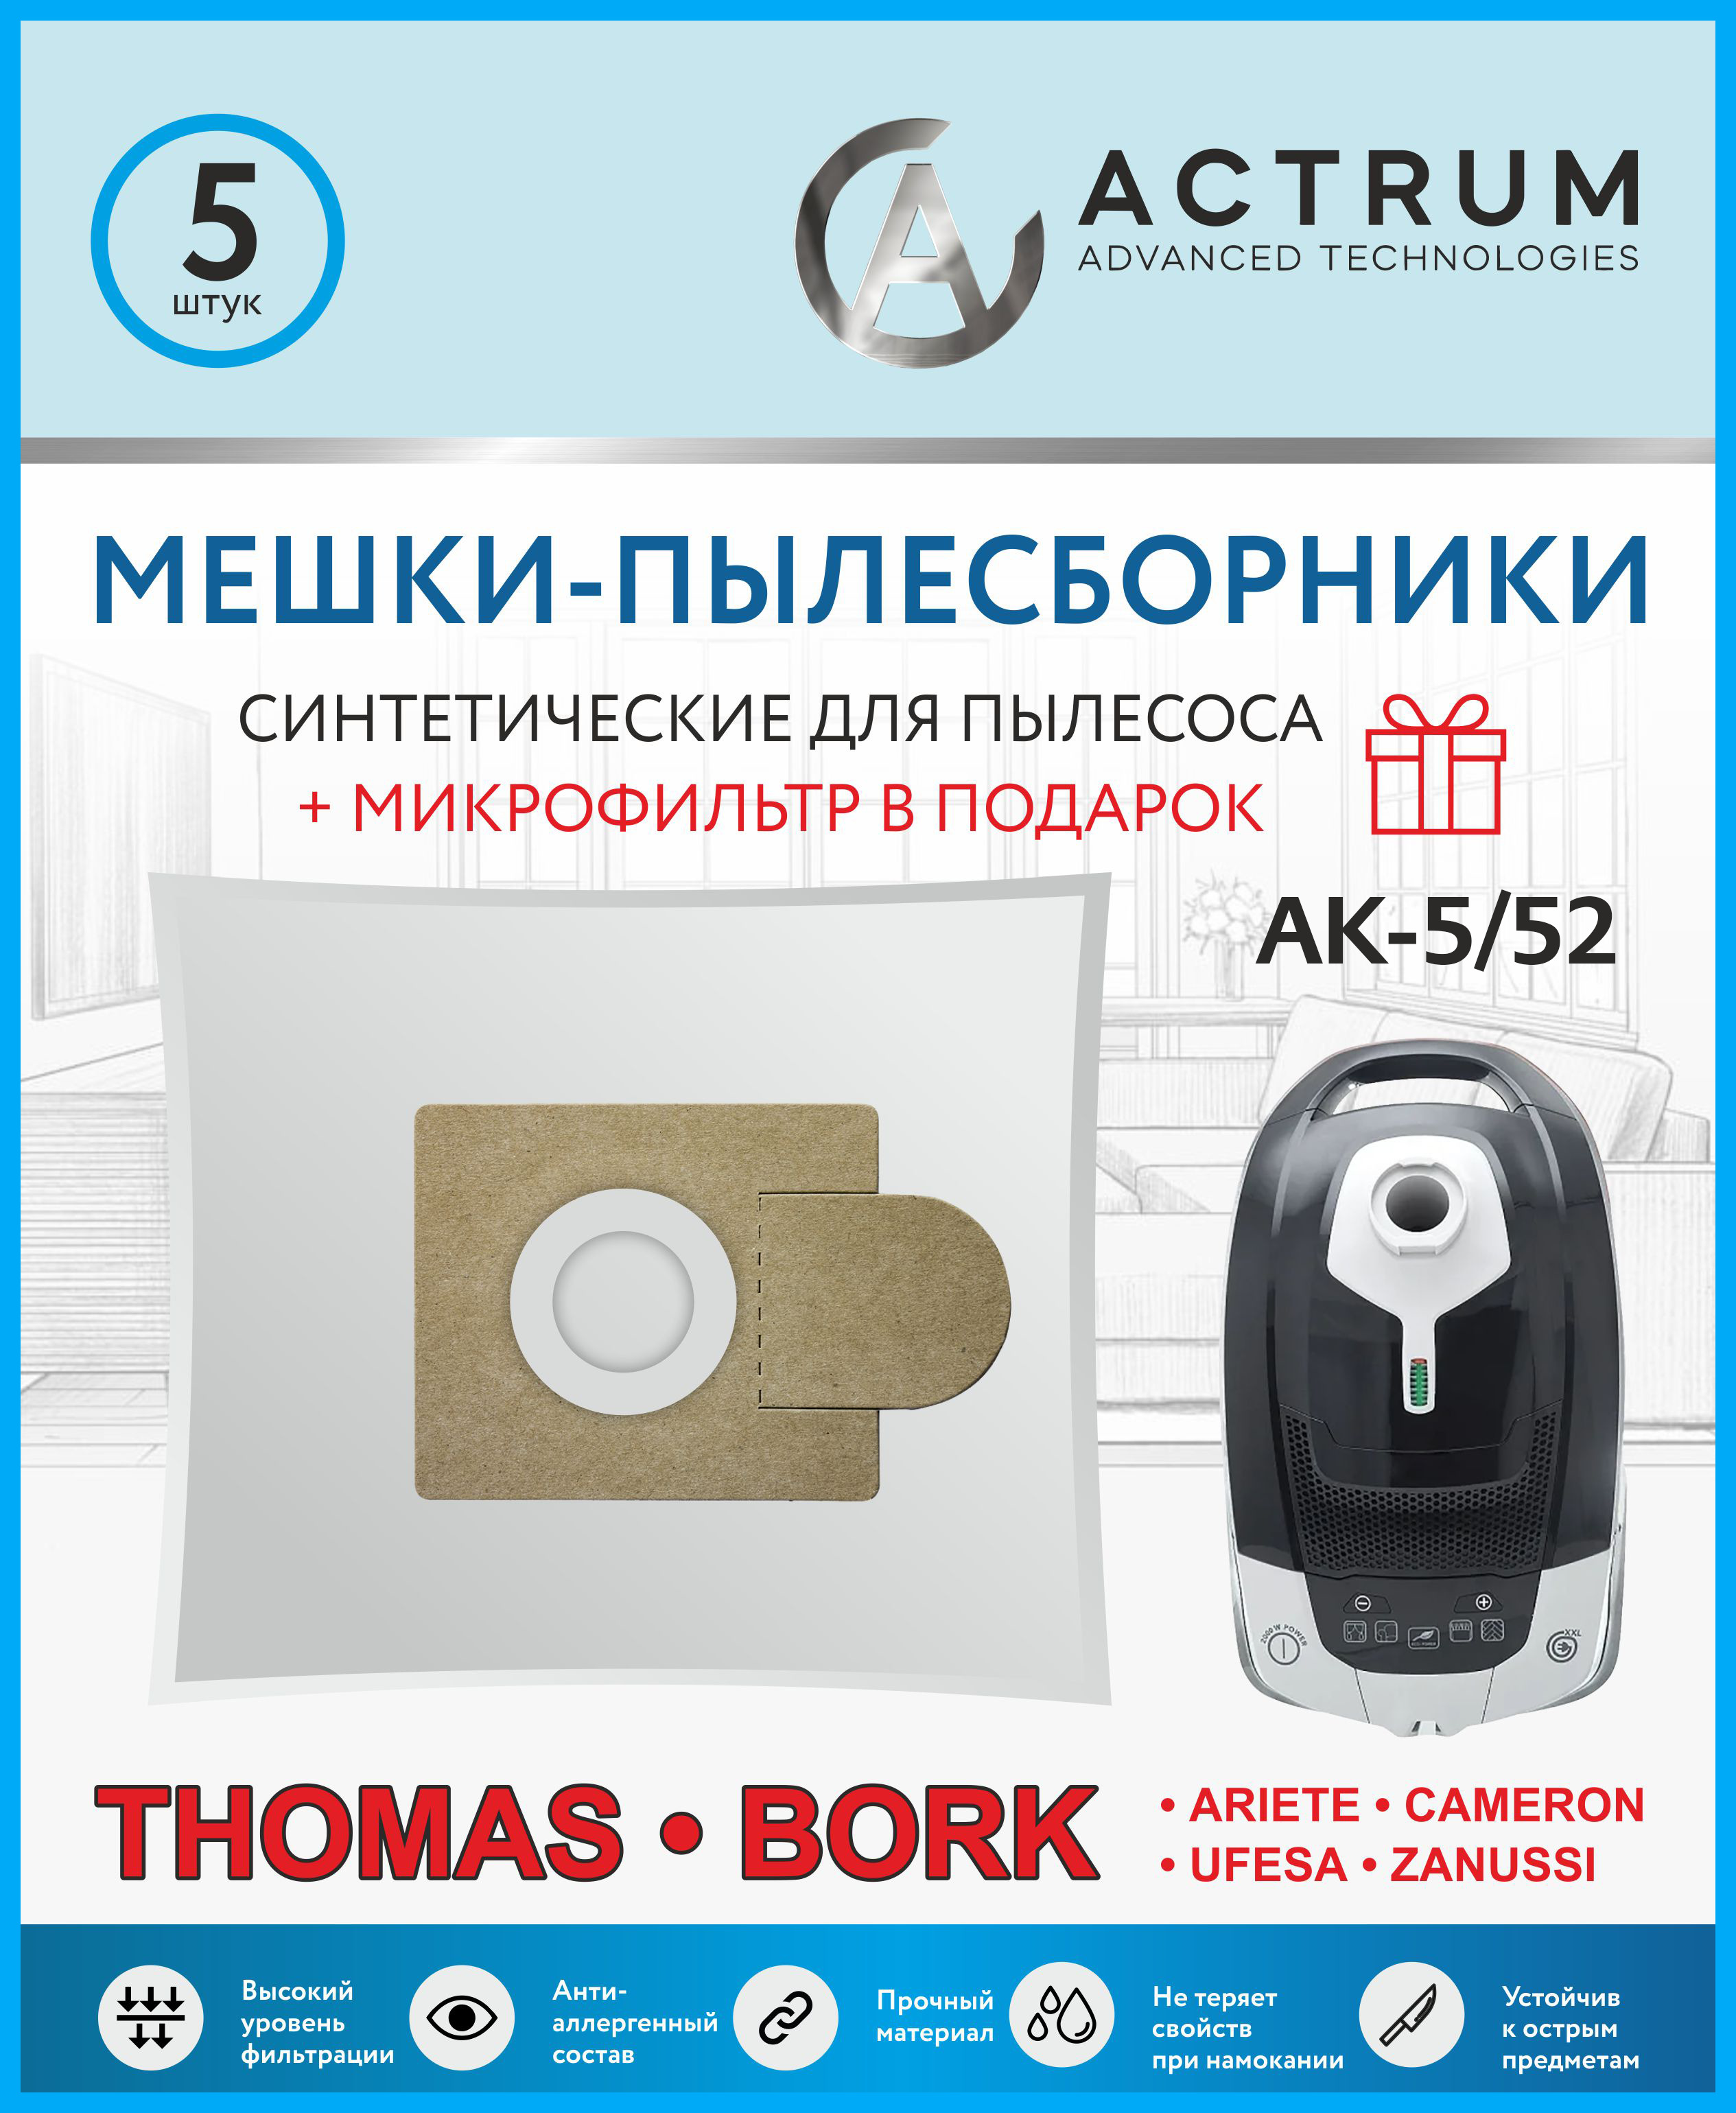 Пылесборник ACTRUM AK-5/52 пылесборник actrum ak 5 01 микрофильтр